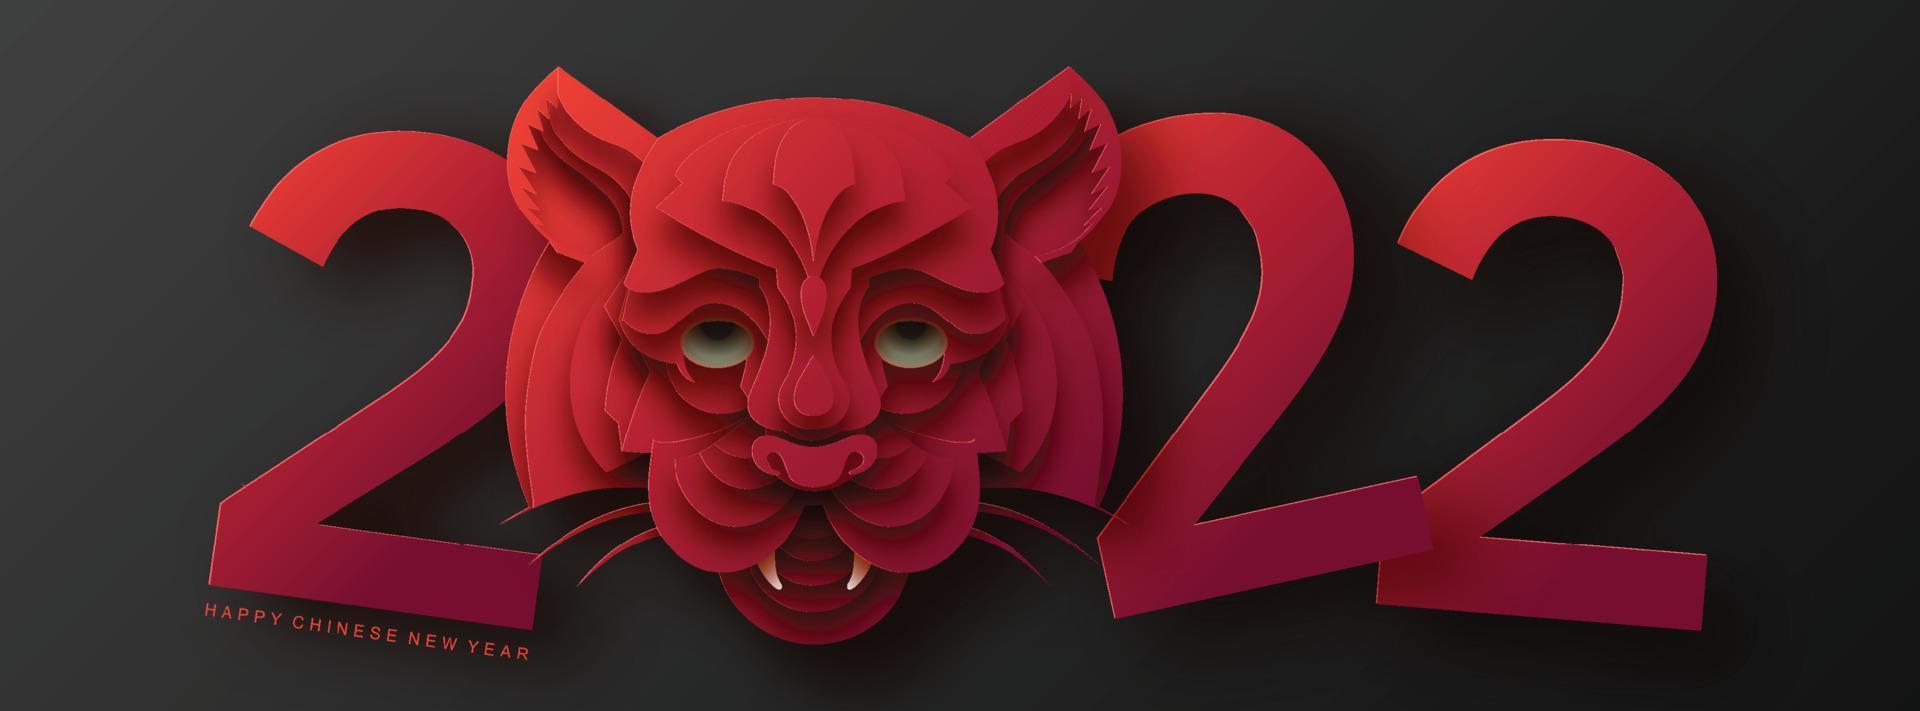 chinees nieuwjaar 2022 jaar van de tijger rode en gouden bloem en aziatische elementen papier gesneden met ambachtelijke stijl op de achtergrond. vector